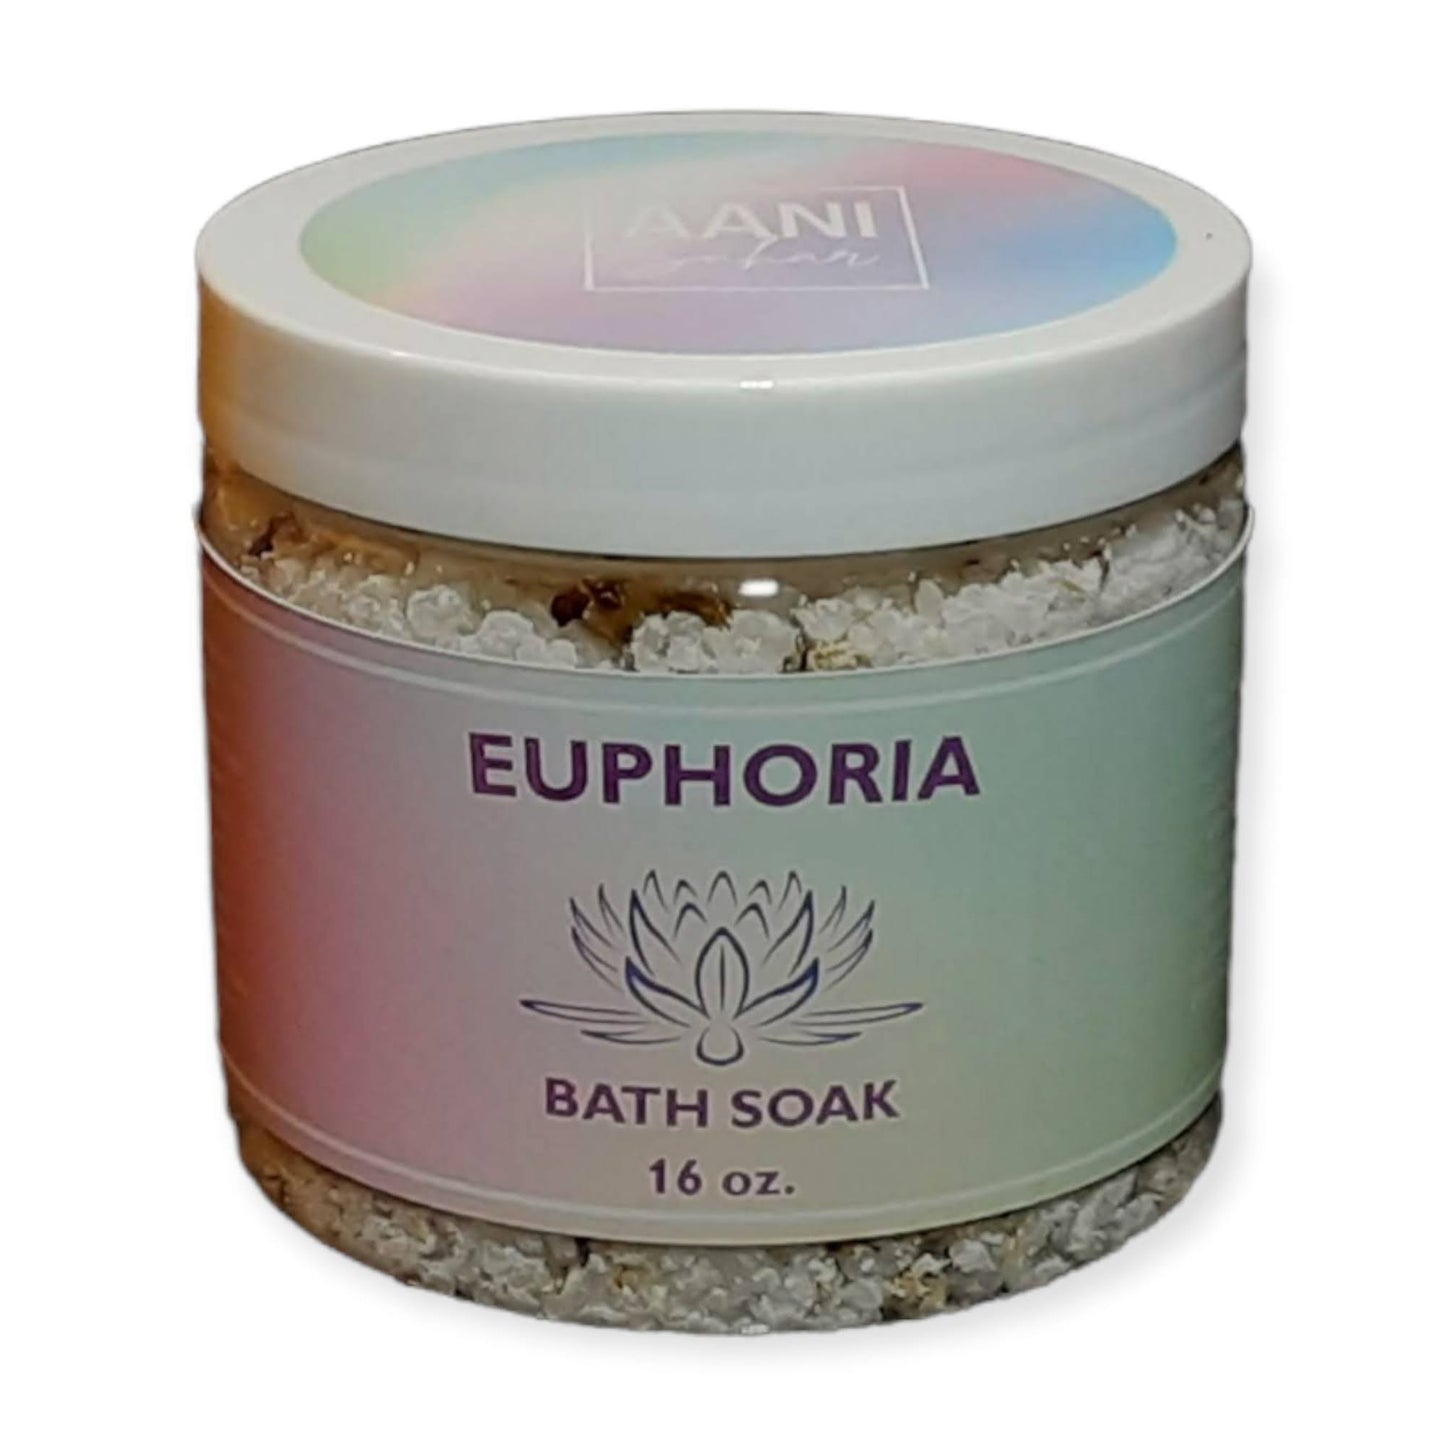 Euphoria Bath Soak